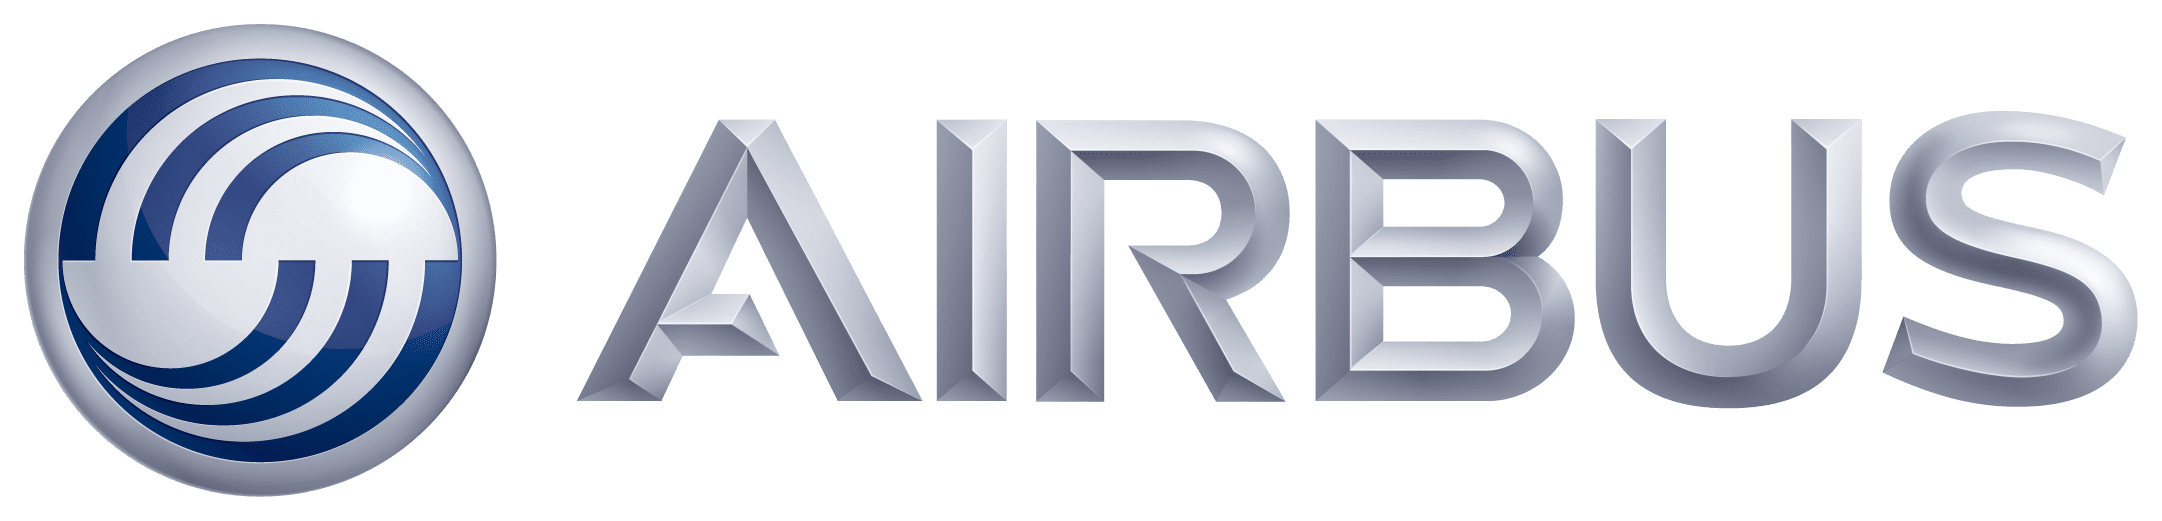 Airbus_logo_3D_Silver